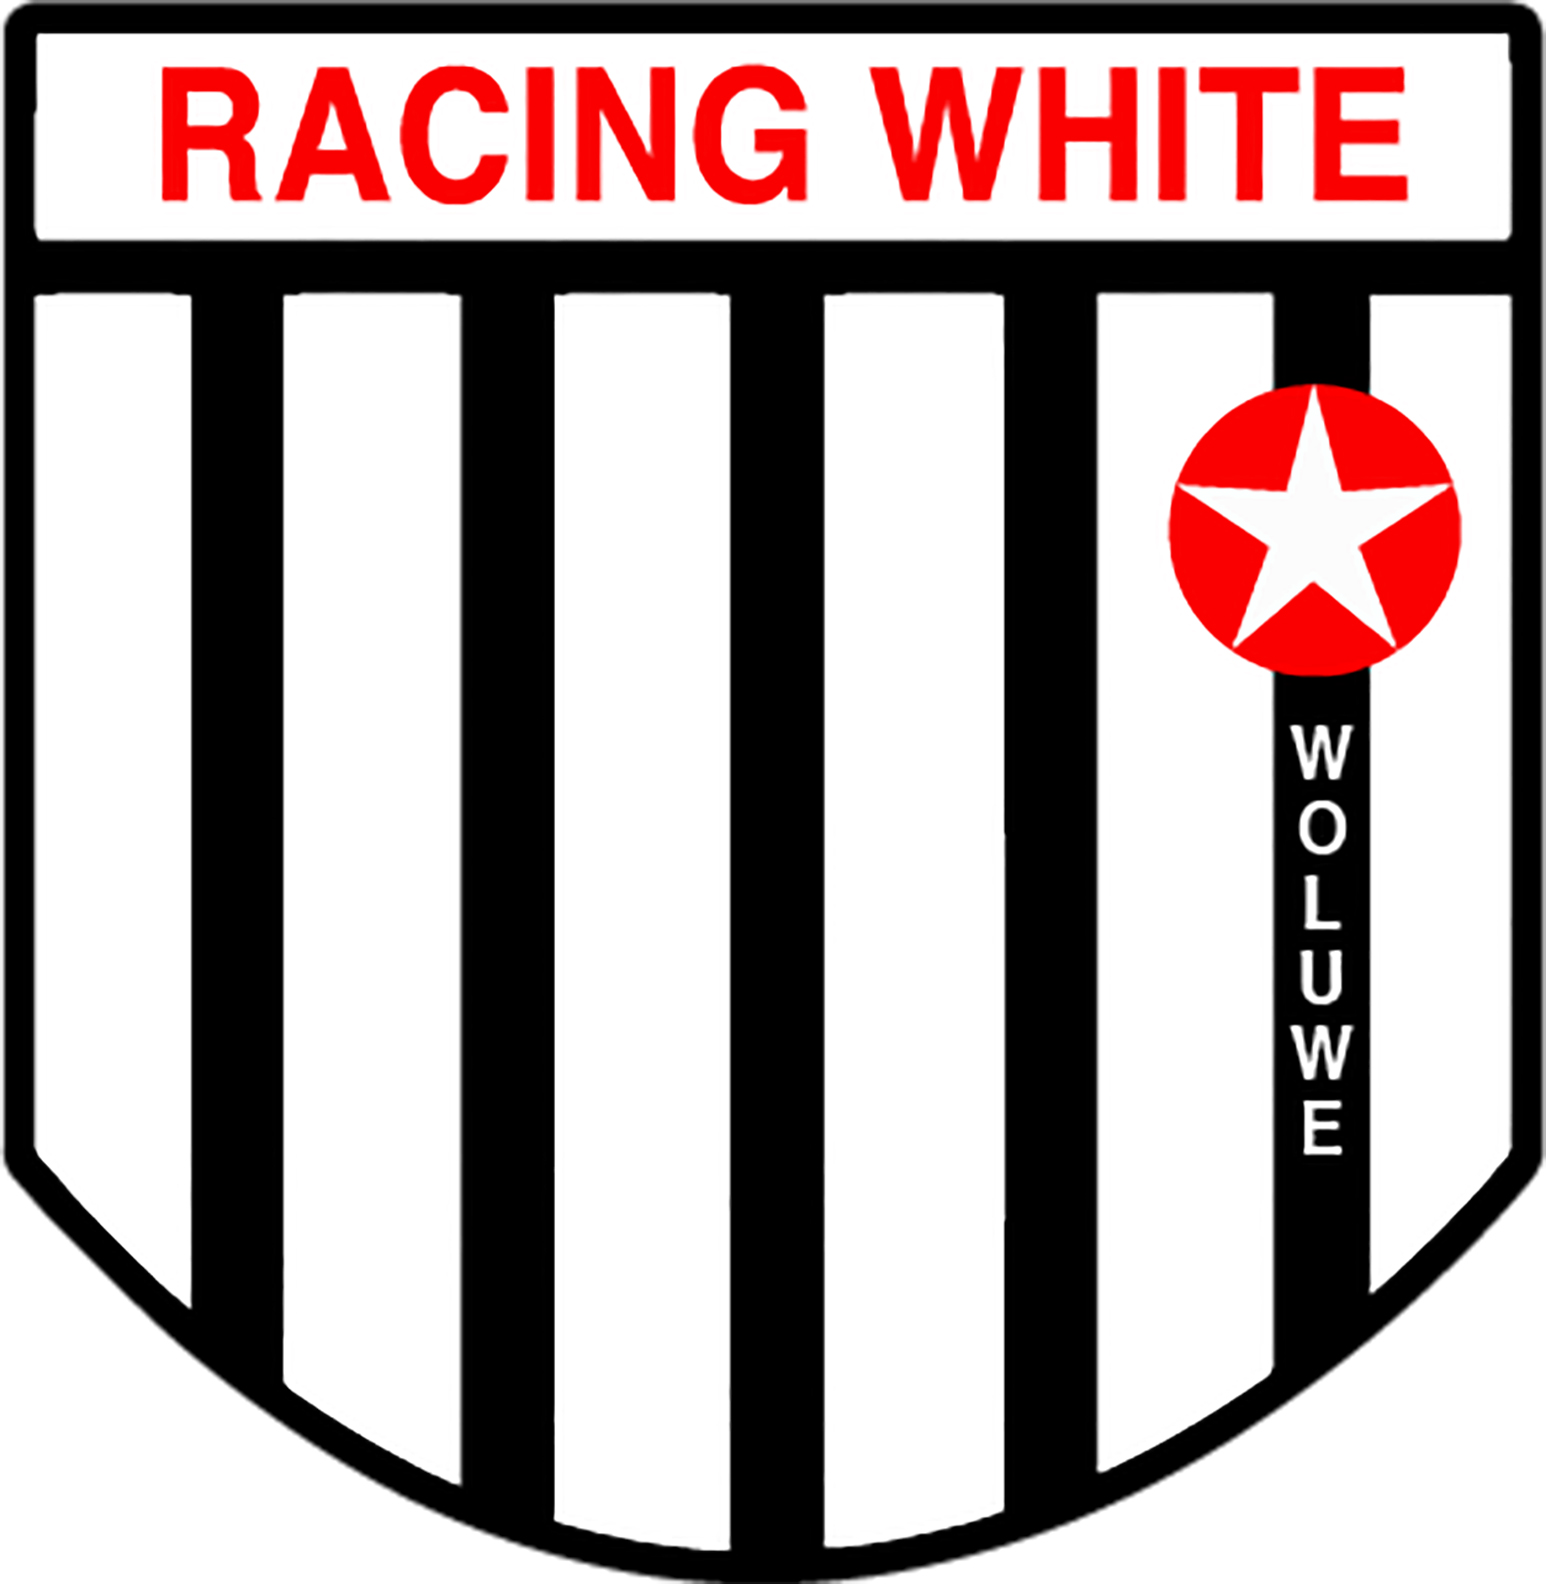 8 - Racing White Woluwe B